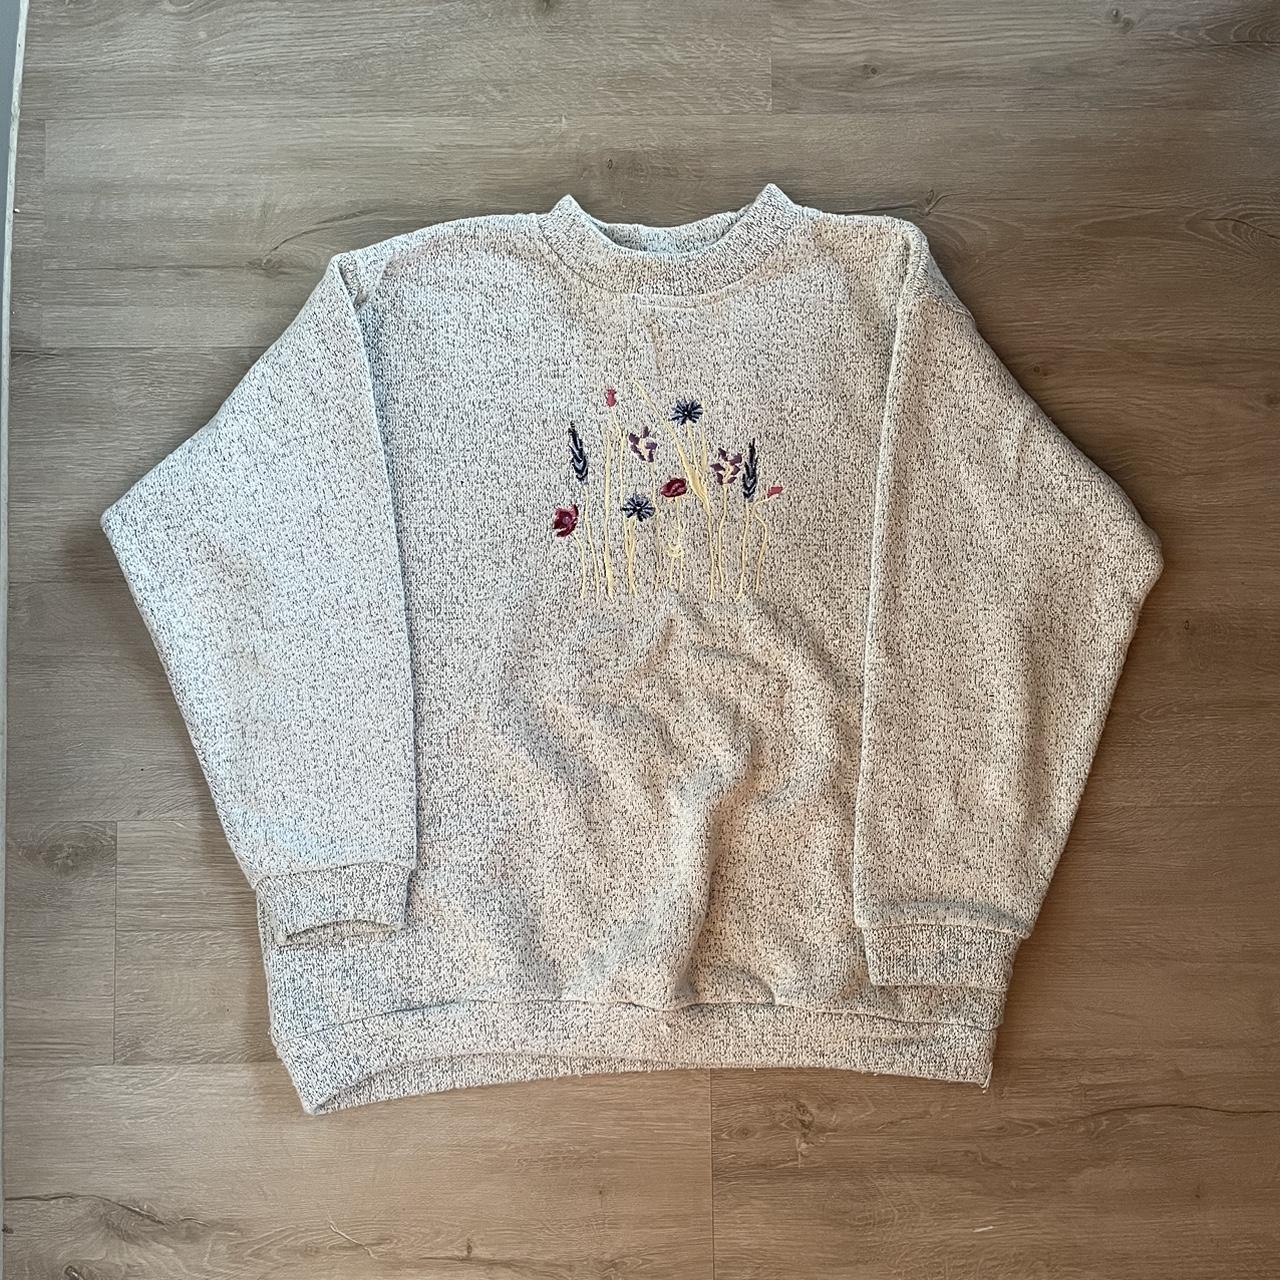 Vintage 90s floral grandpa sweater Size L Sign of... - Depop